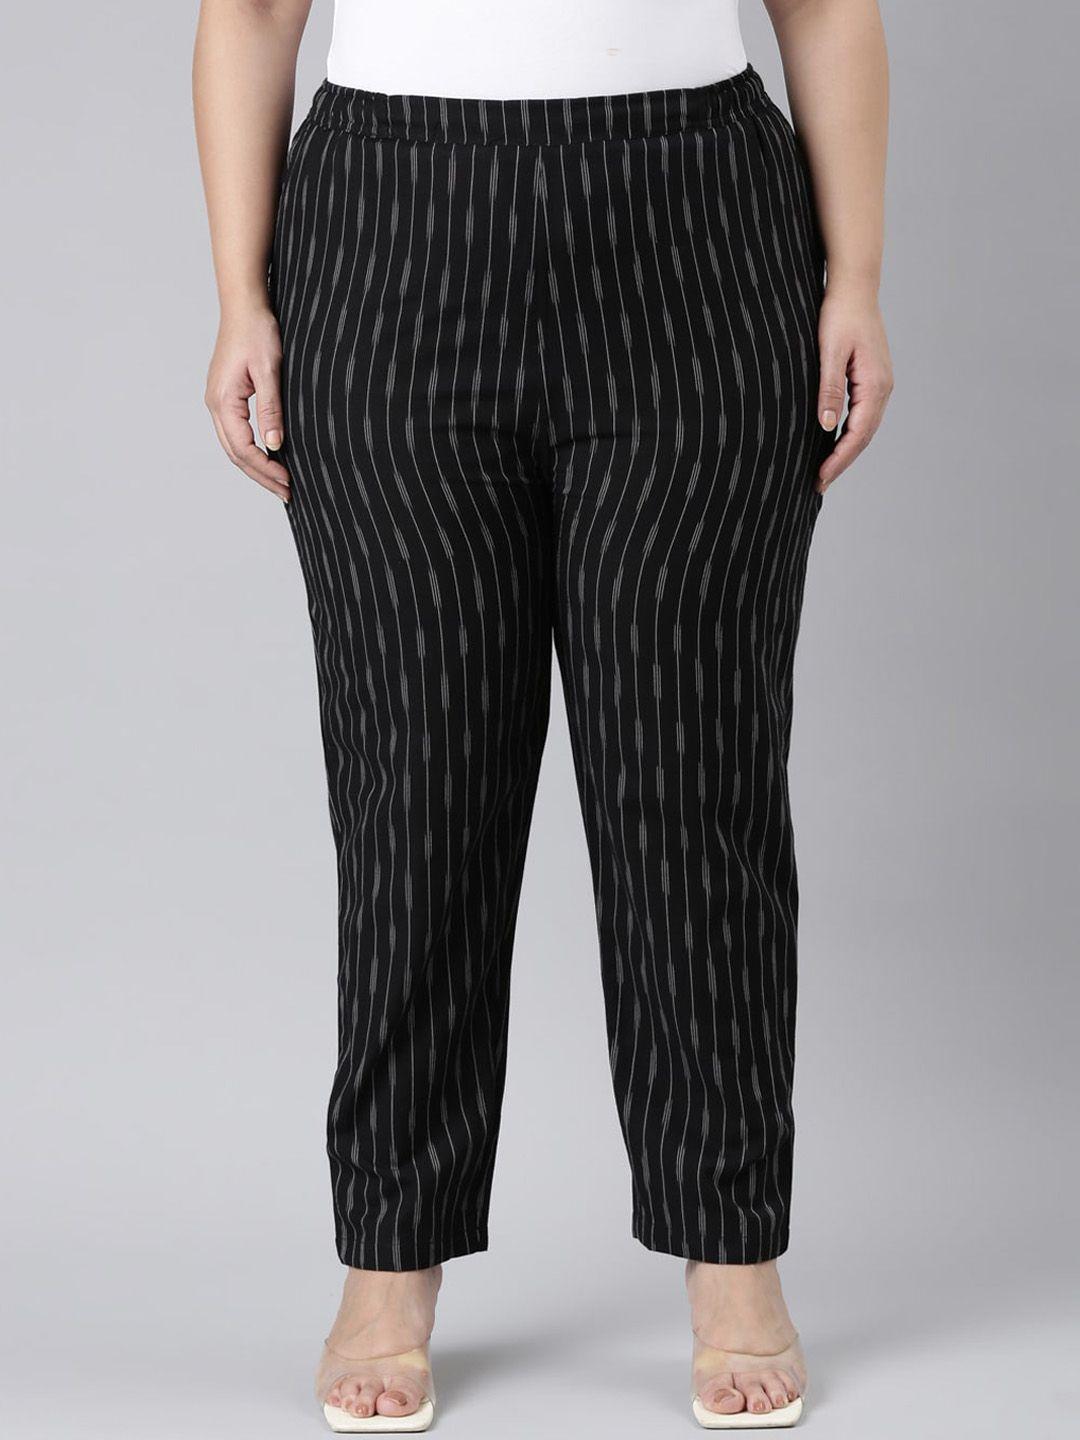 go colors women plus size comfort striped linen trousers